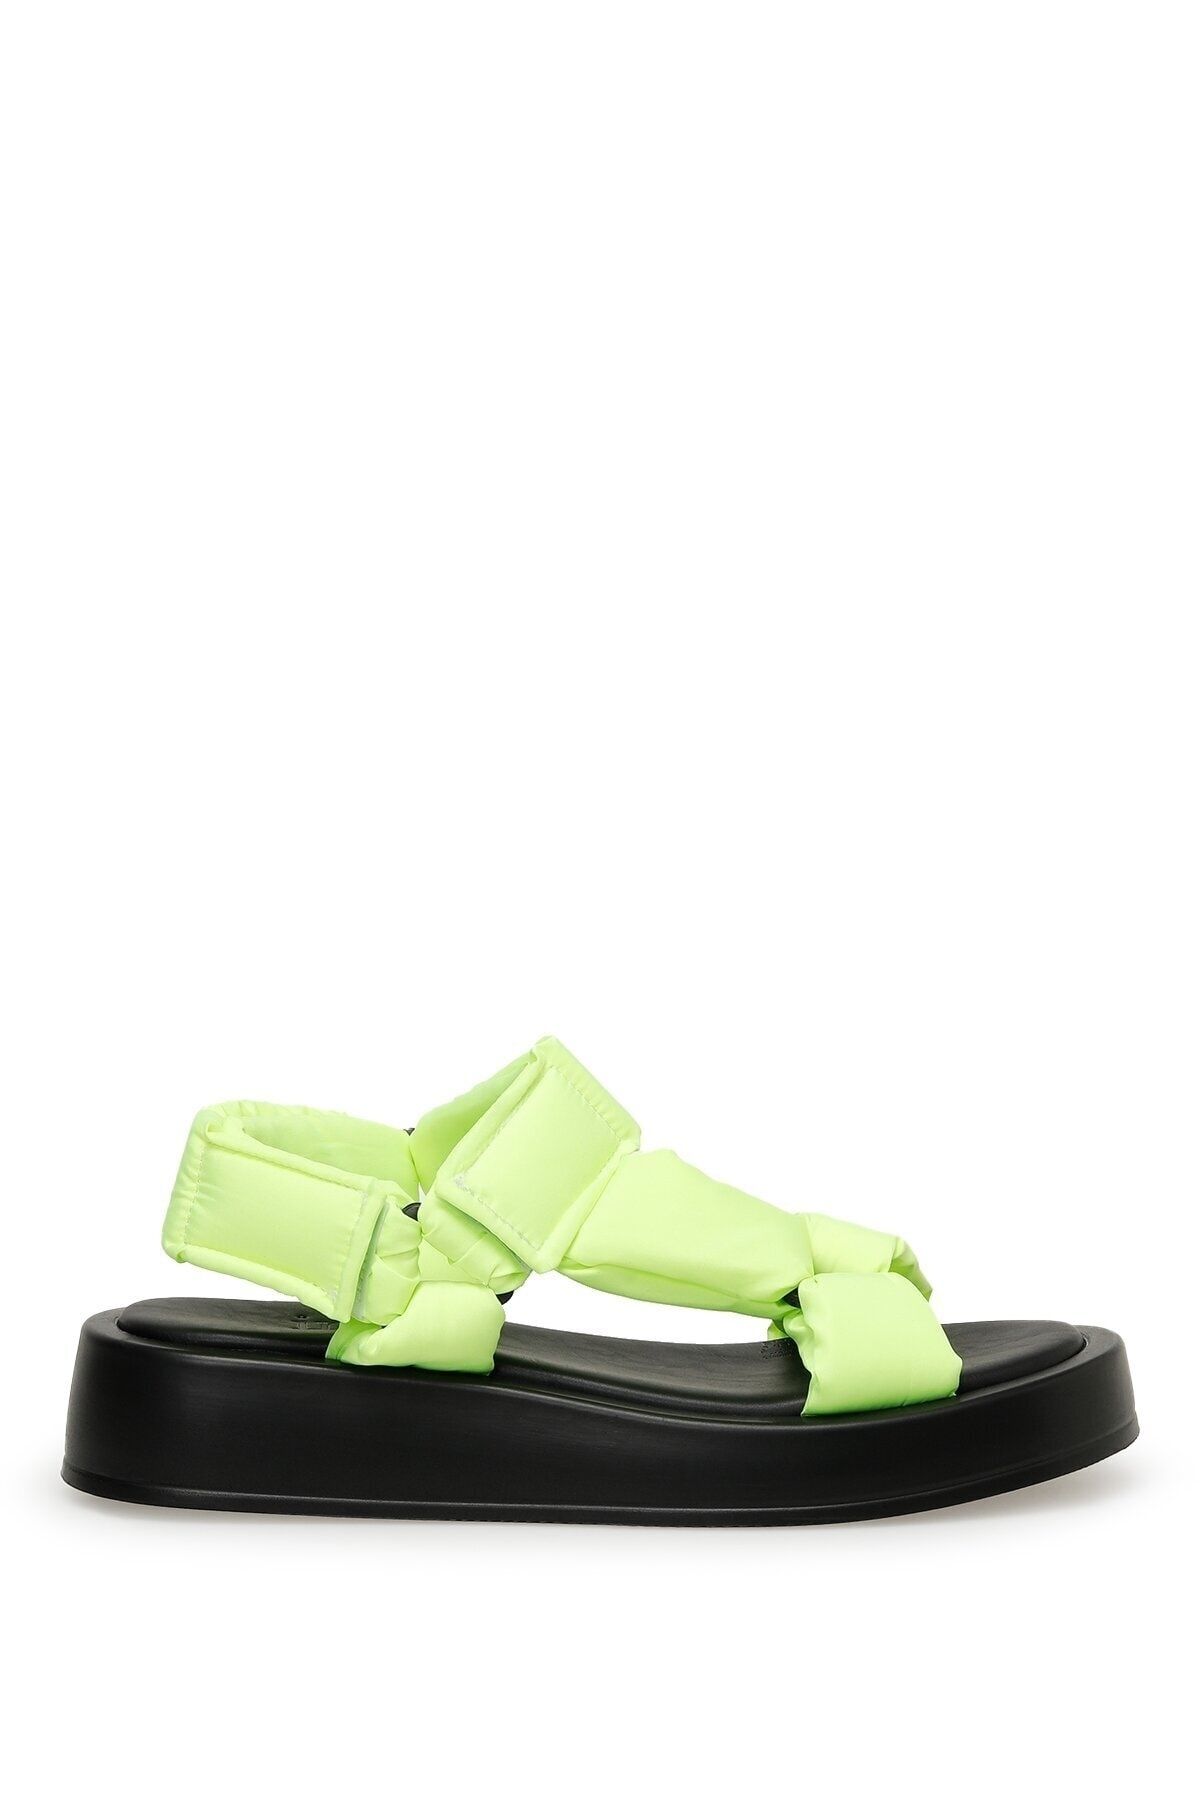 İnci INCI ELWIS 3FX Neon Yeşil Kadın Kalın Taban Sandalet